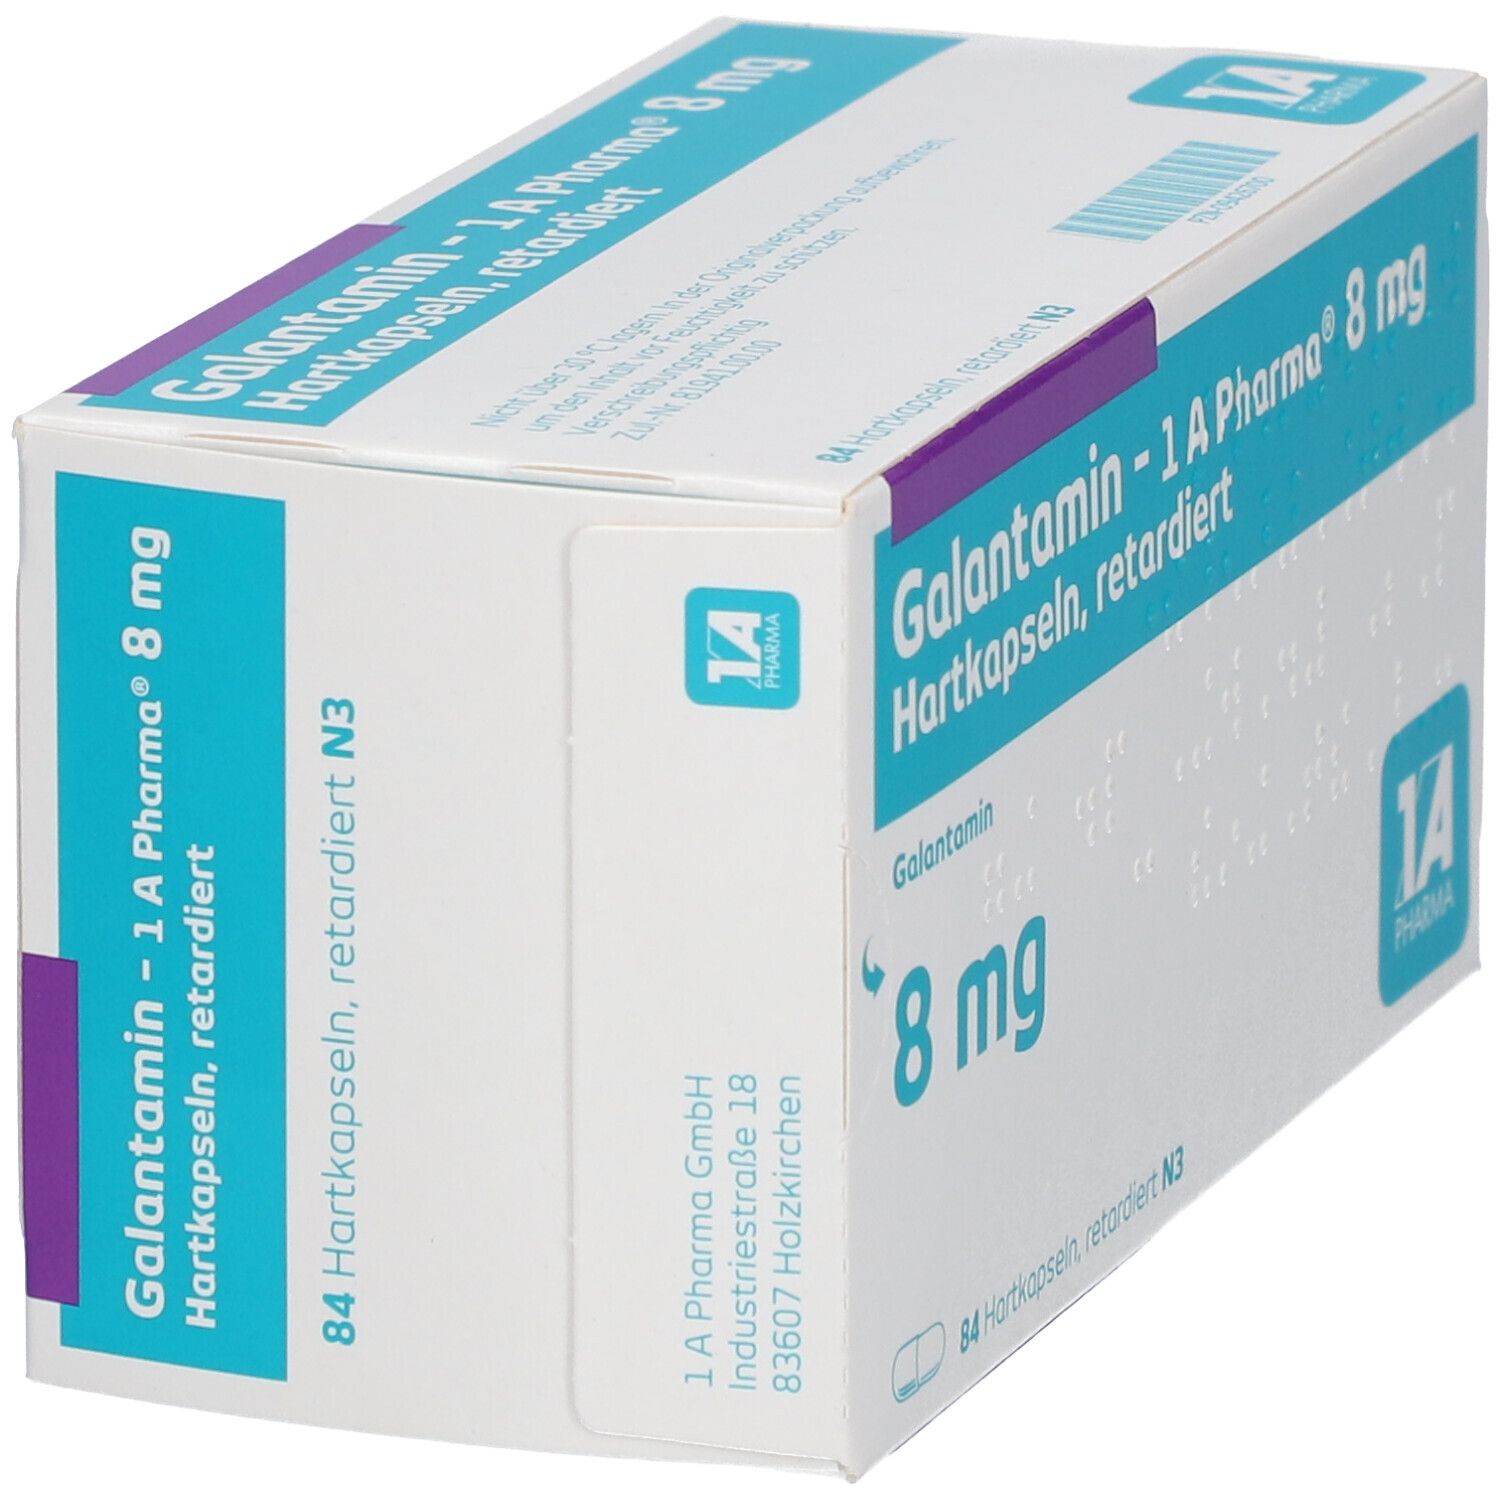 Galantamin - 1 A Pharma® 8 mg